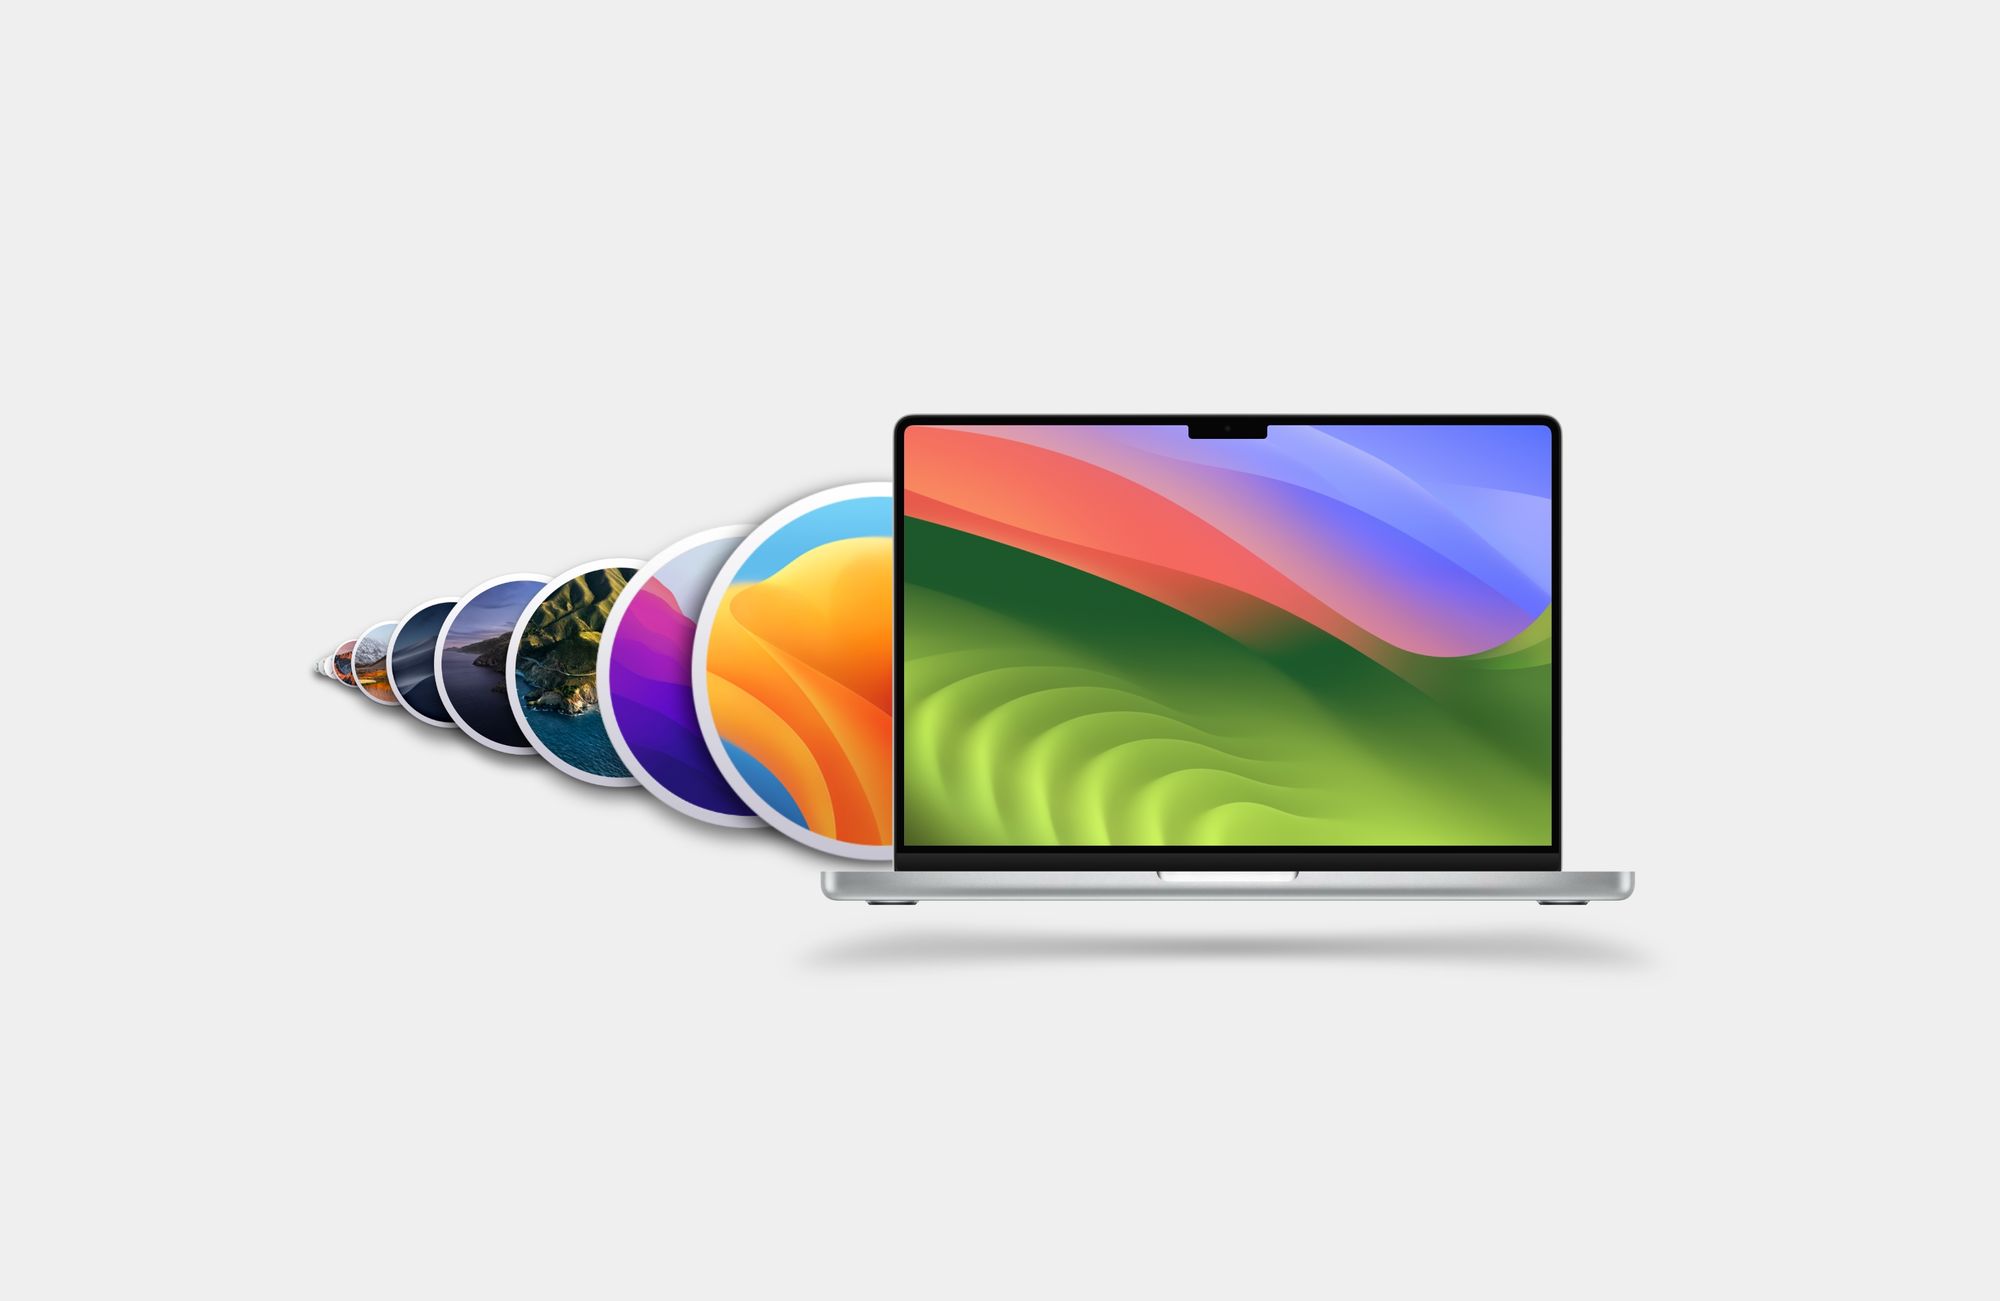 OS X e macOS - Todas as versões lançadas até hoje post image